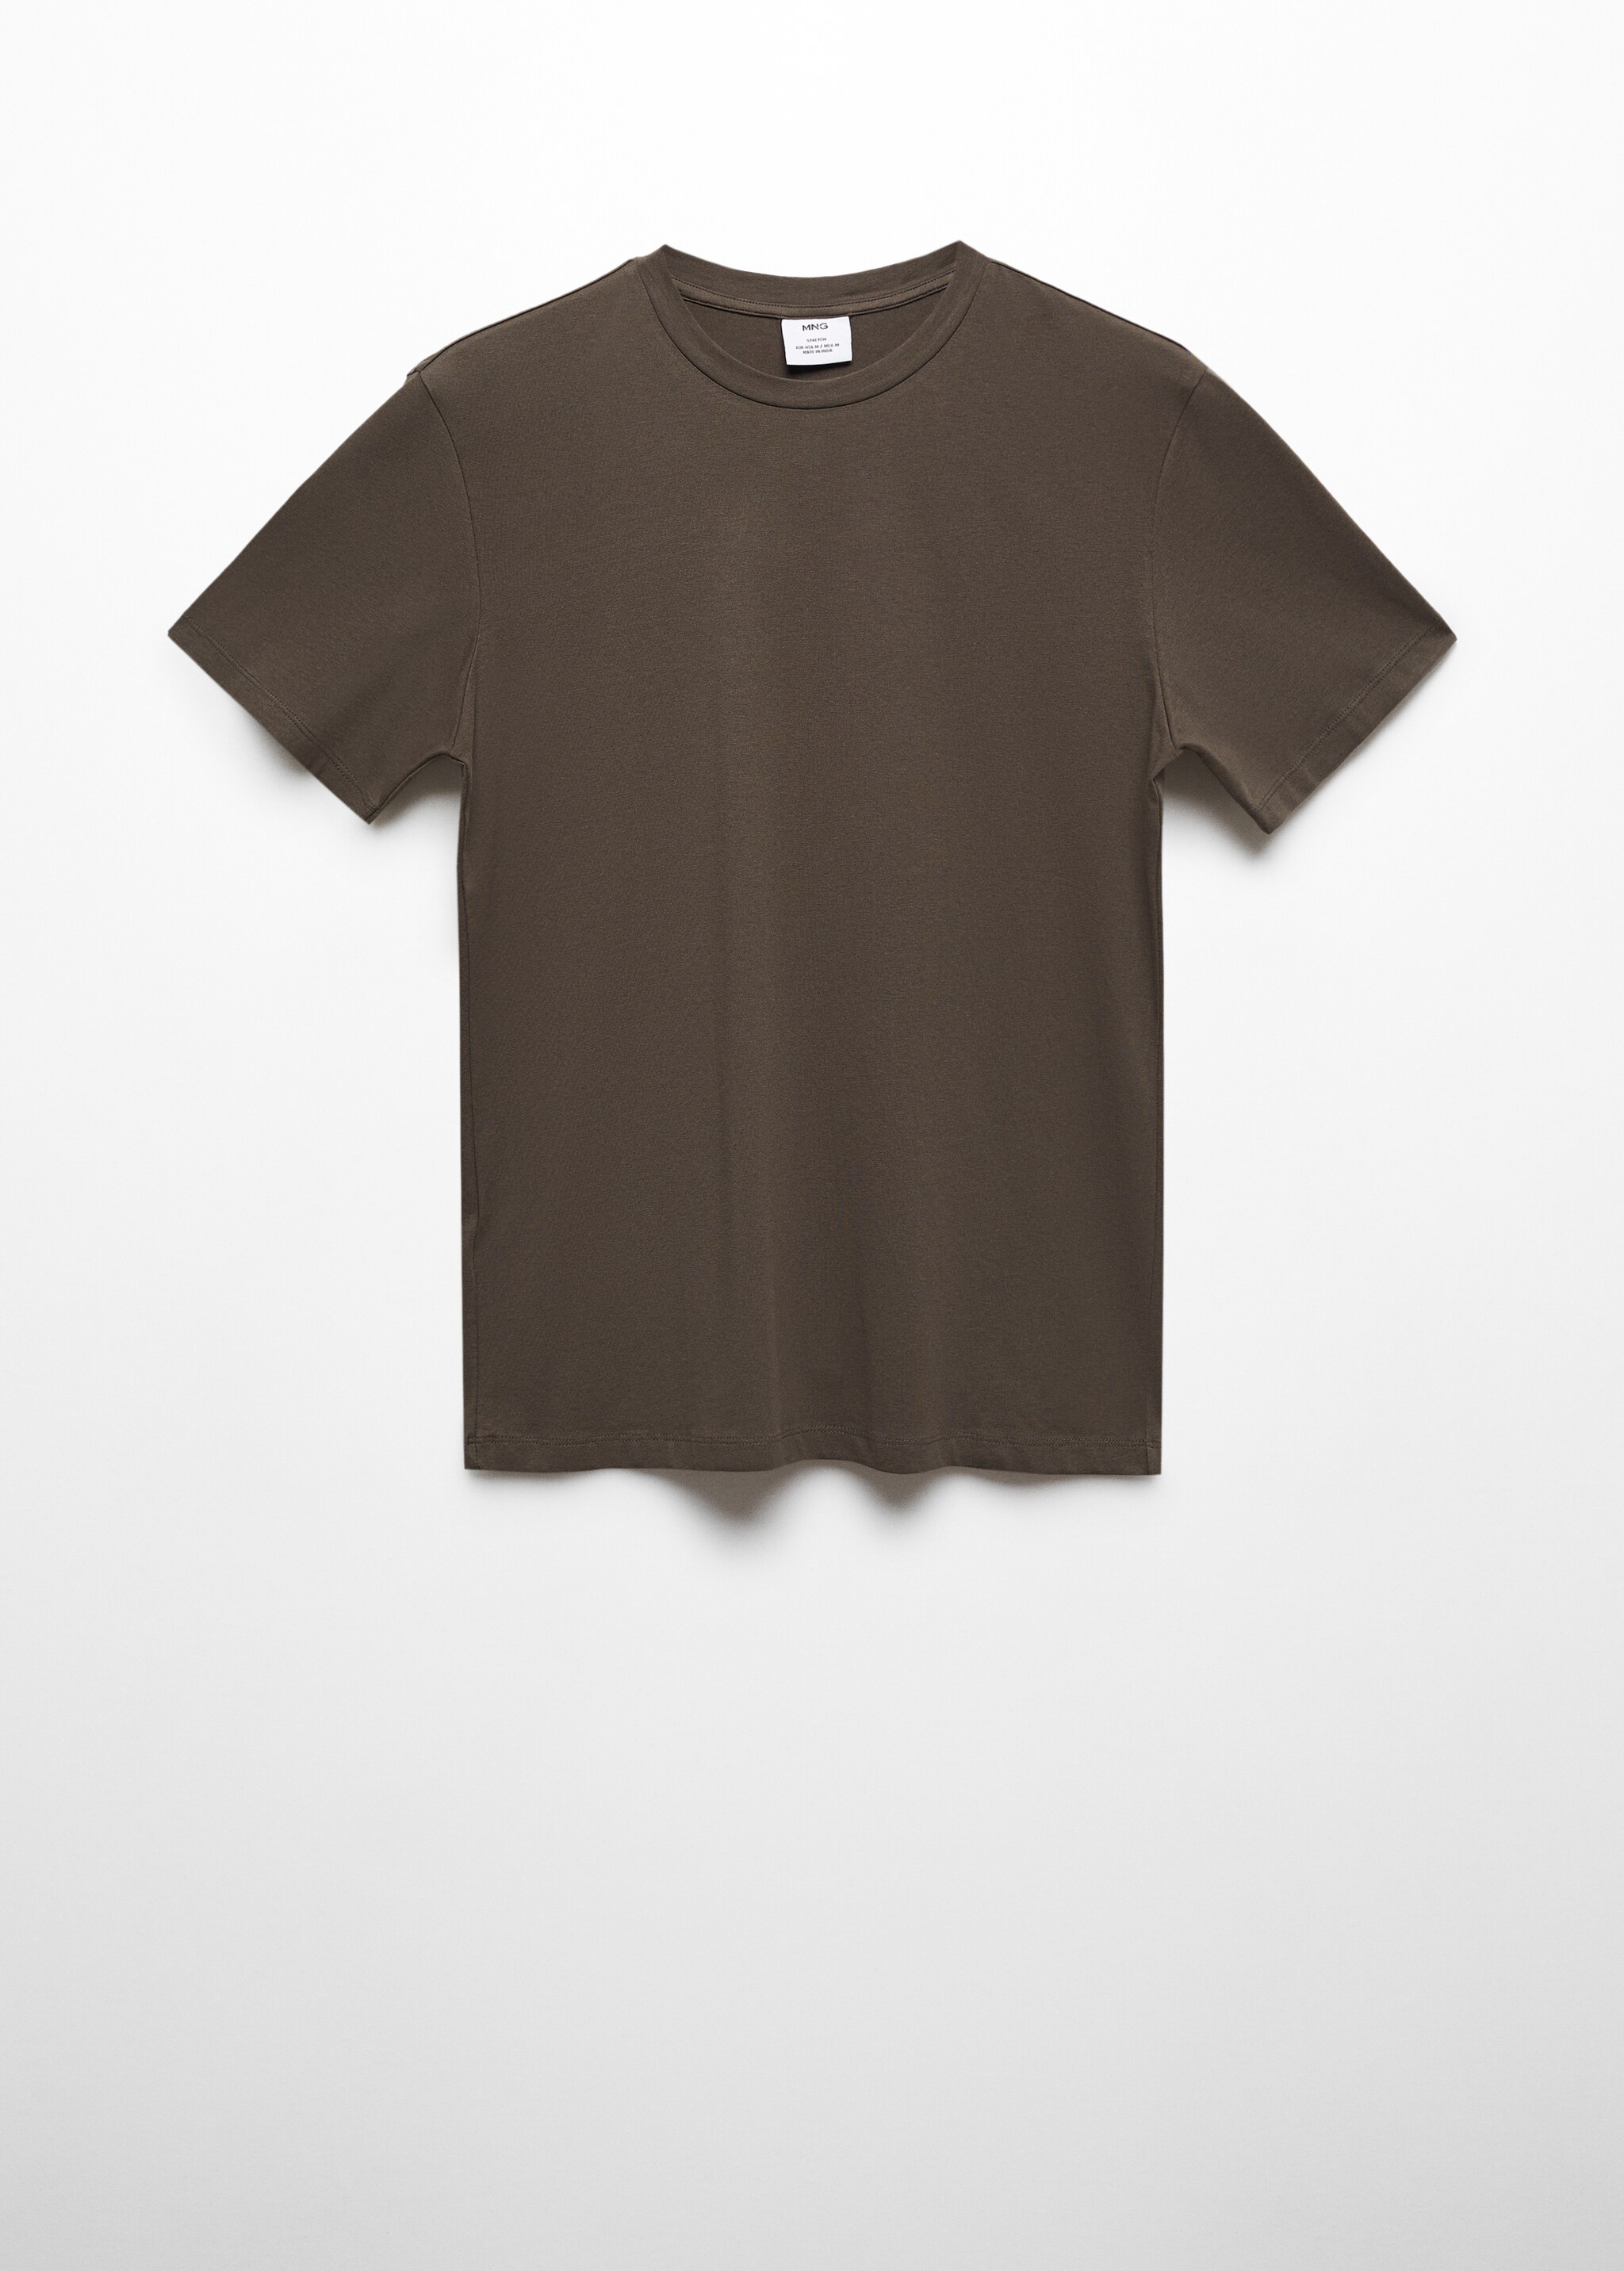 T-shirt algodão stretch - Artigo sem modelo